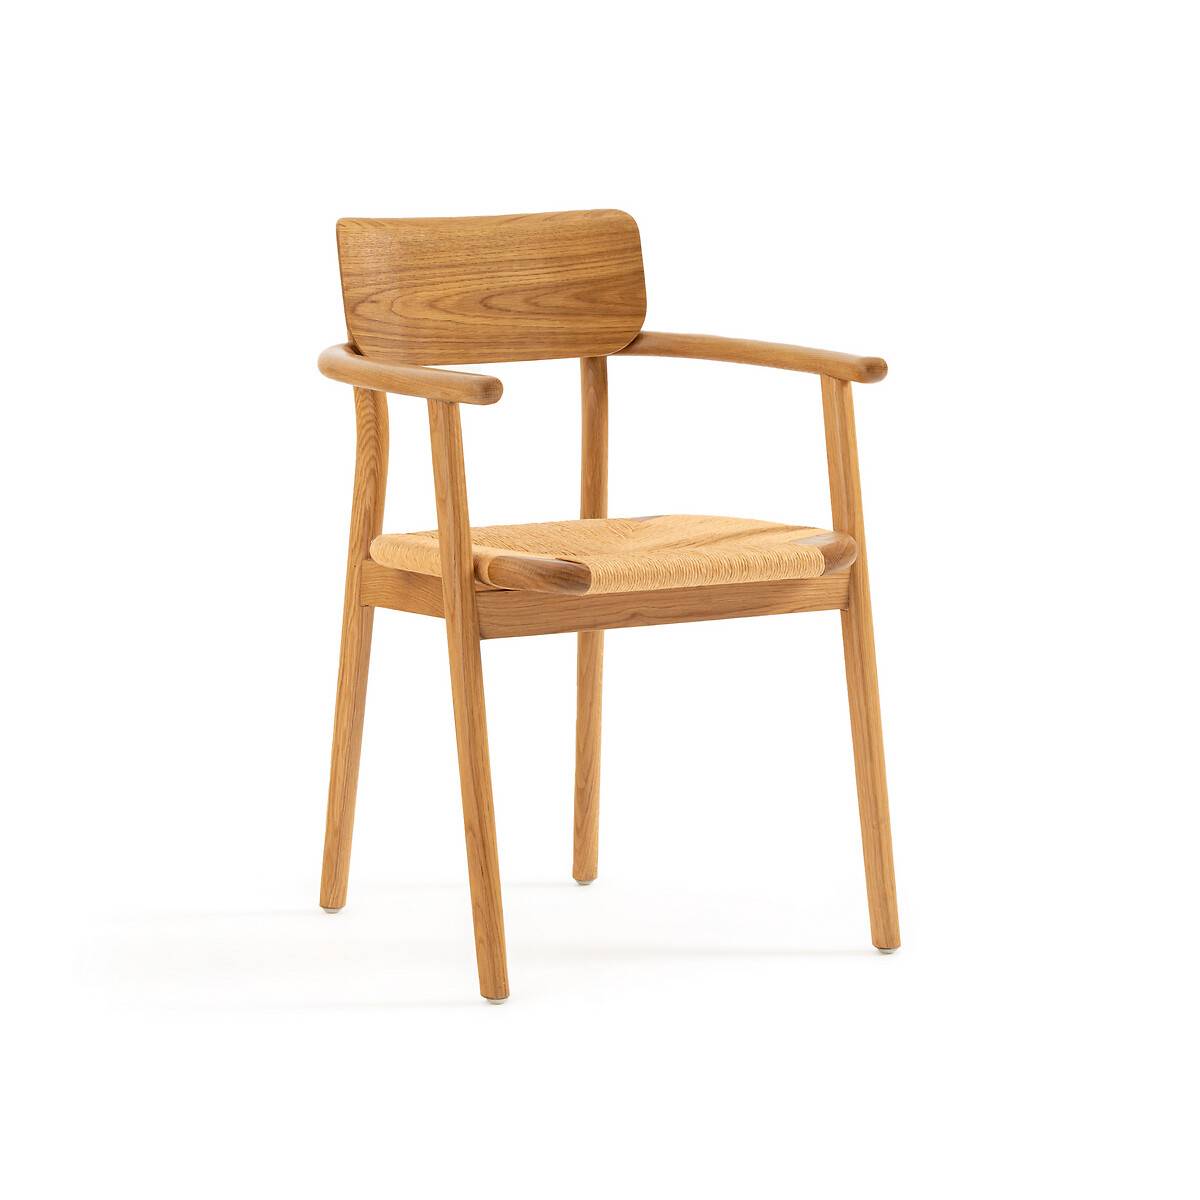 Кресло для столовой из массива дуба и плетеного материала La Redoute Interieurs 39 899 21 944 руб.